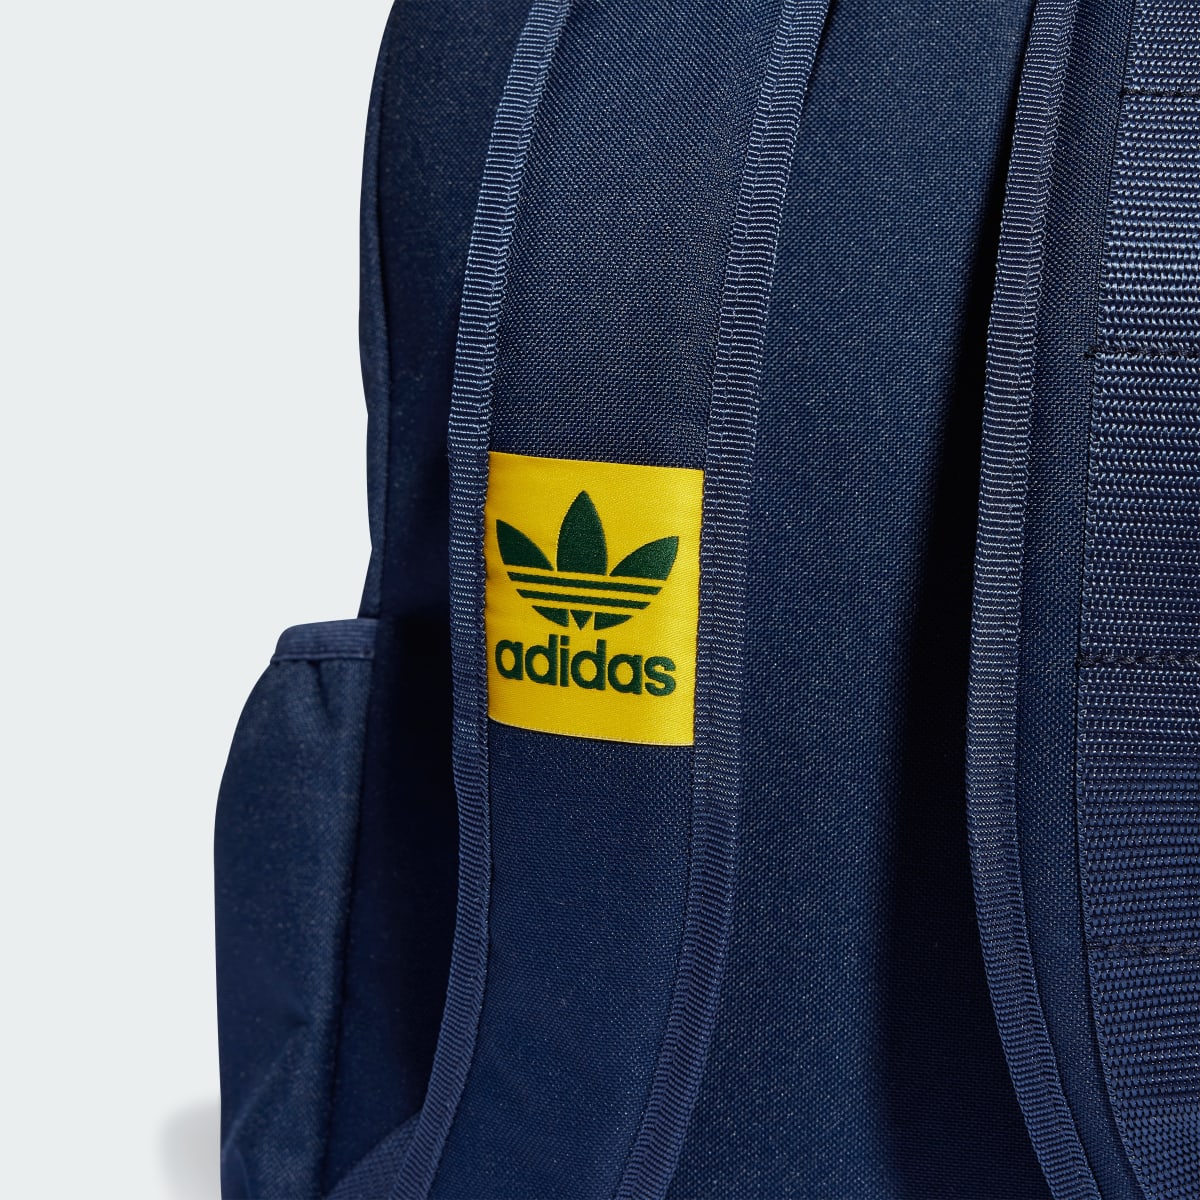 Adidas VRST Backpack. 5